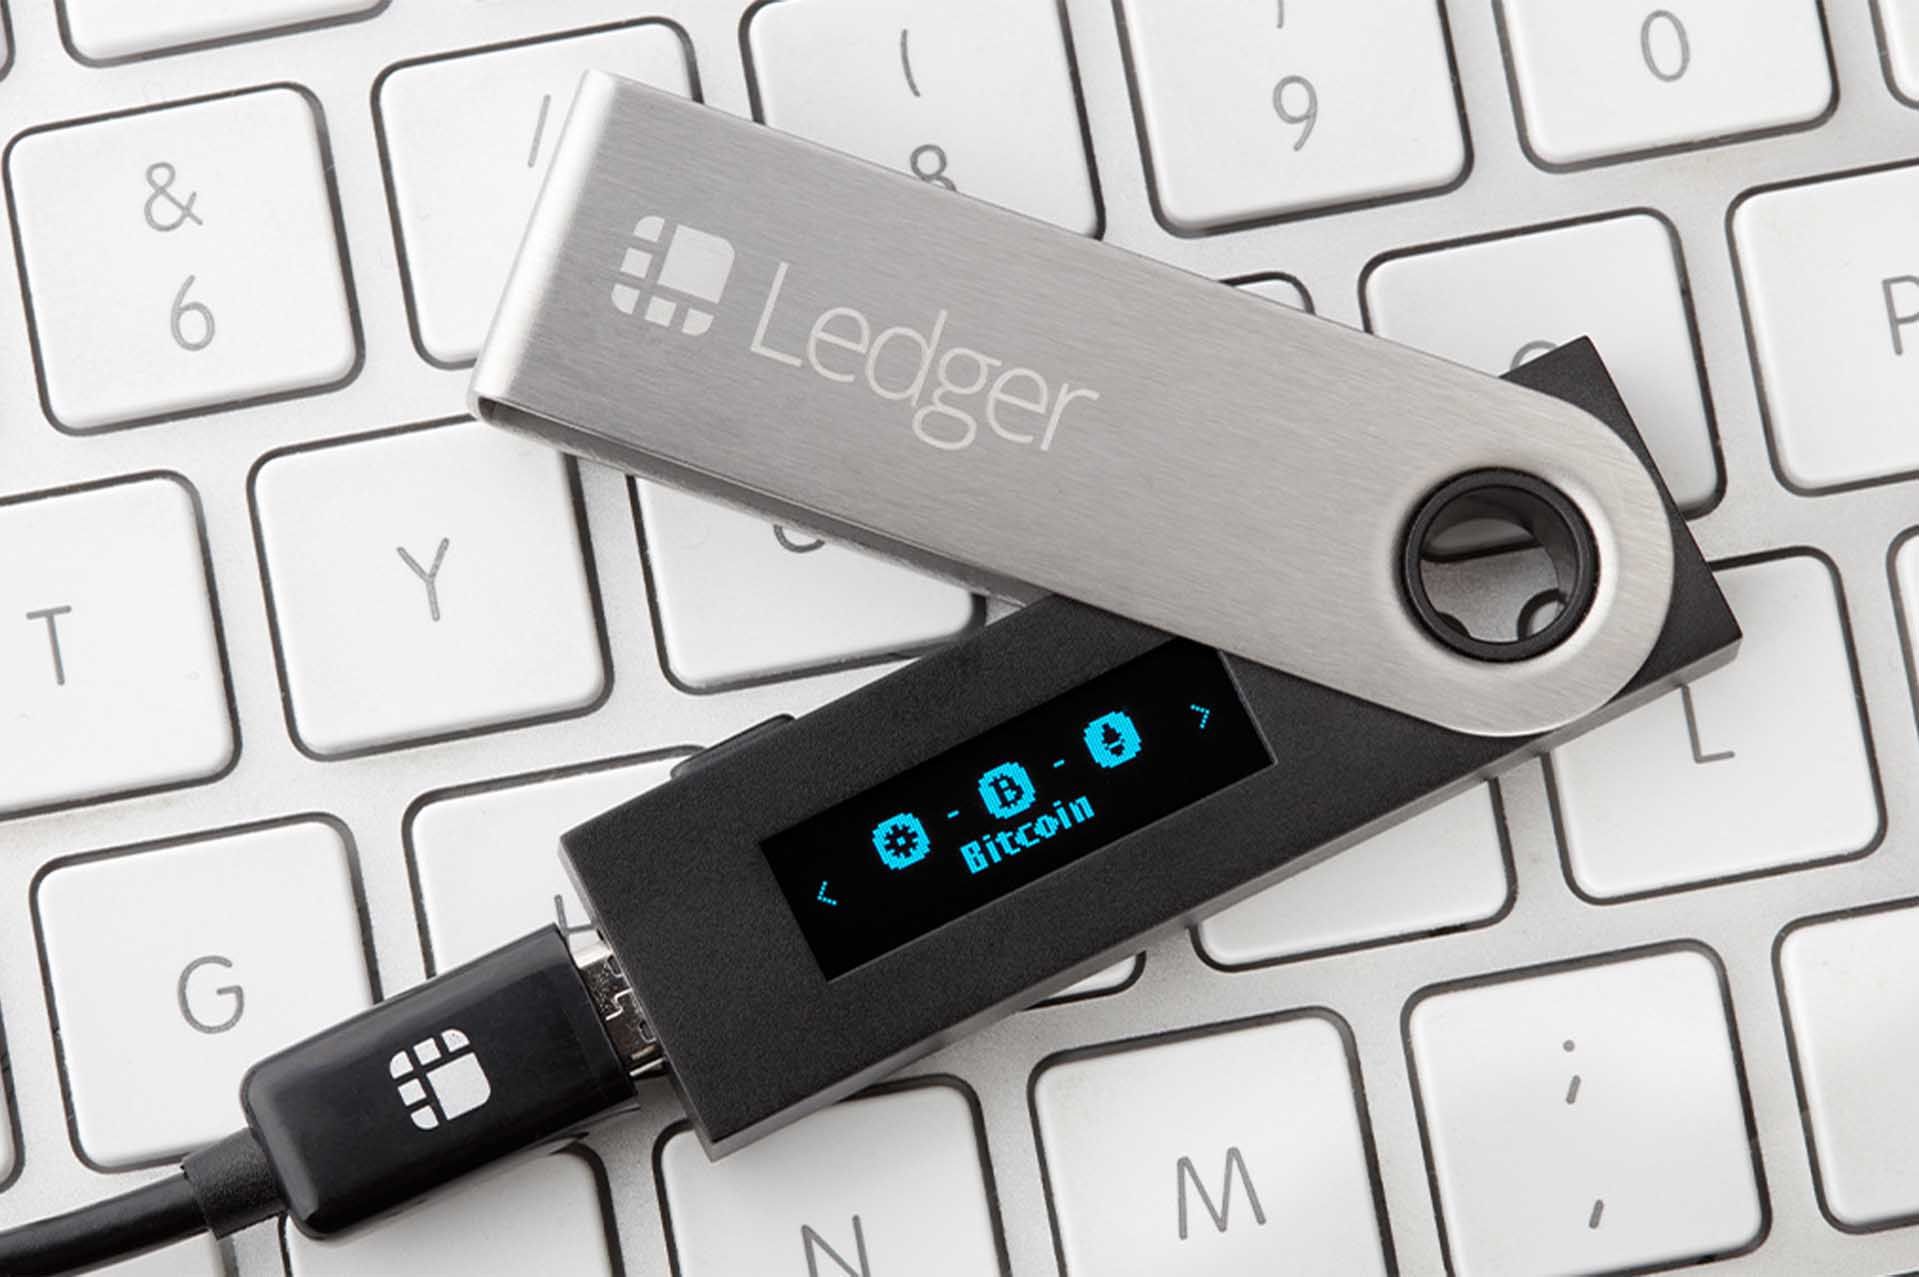 Des escrocs envoient de fausses clés USB Ledger pour voler des  cryptomonnaies - Les Numériques